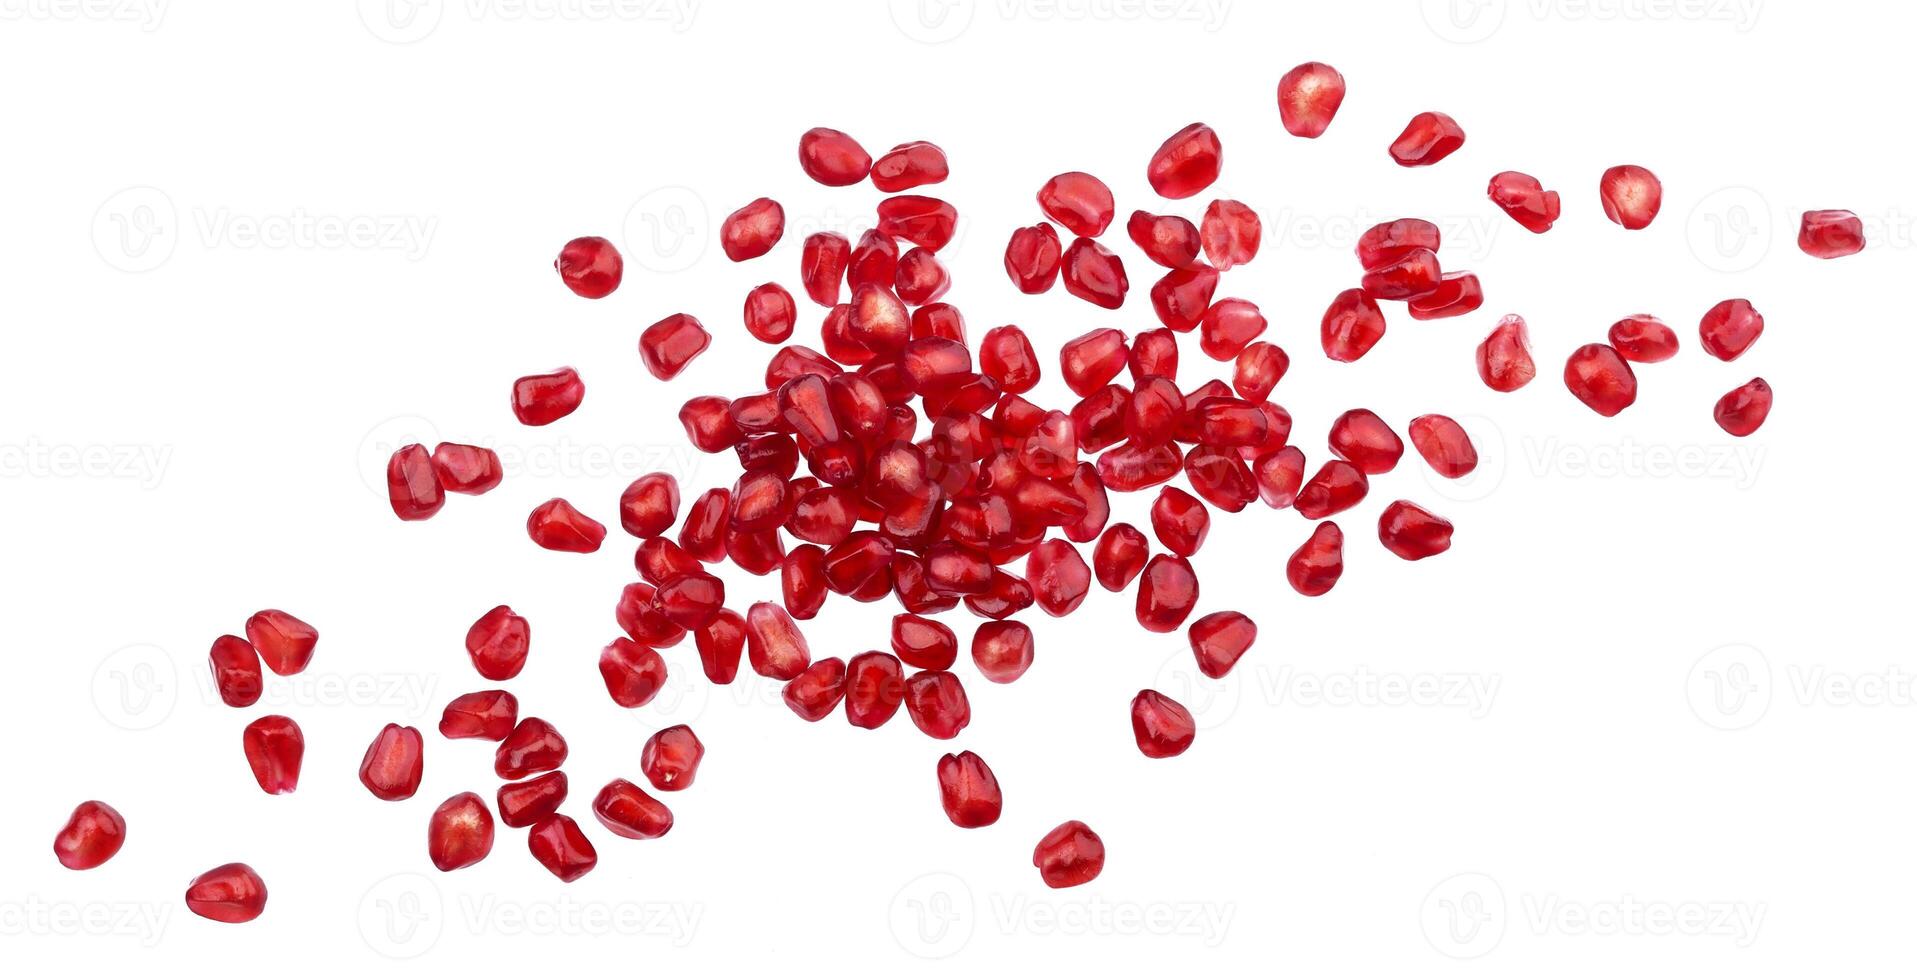 Pomegranate seeds isolated on white background photo